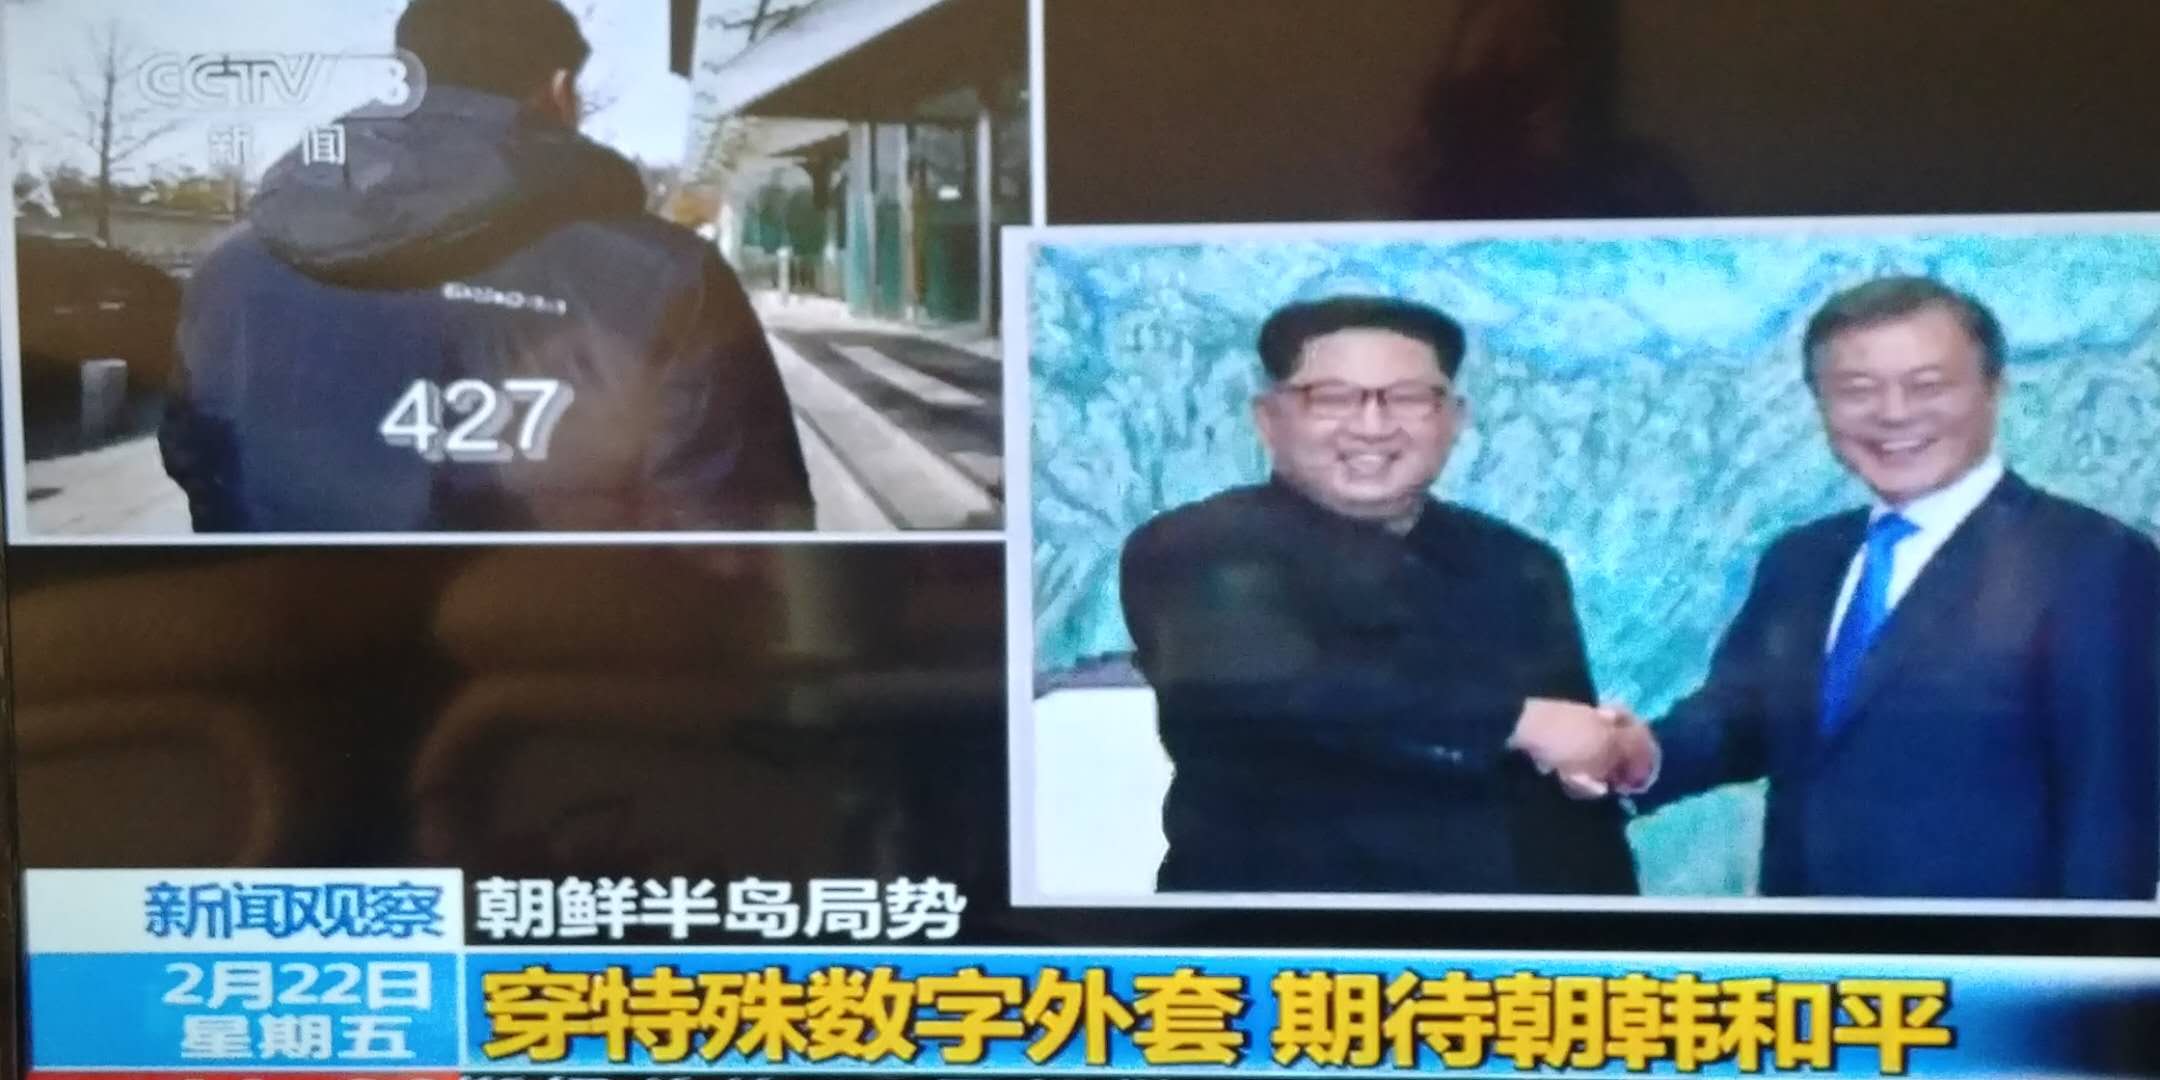 한국 청와대 직원의 옷에 새겨진 남북정상회담 날짜의 의미에 대해 보도한 중국 관영언론의 화면.